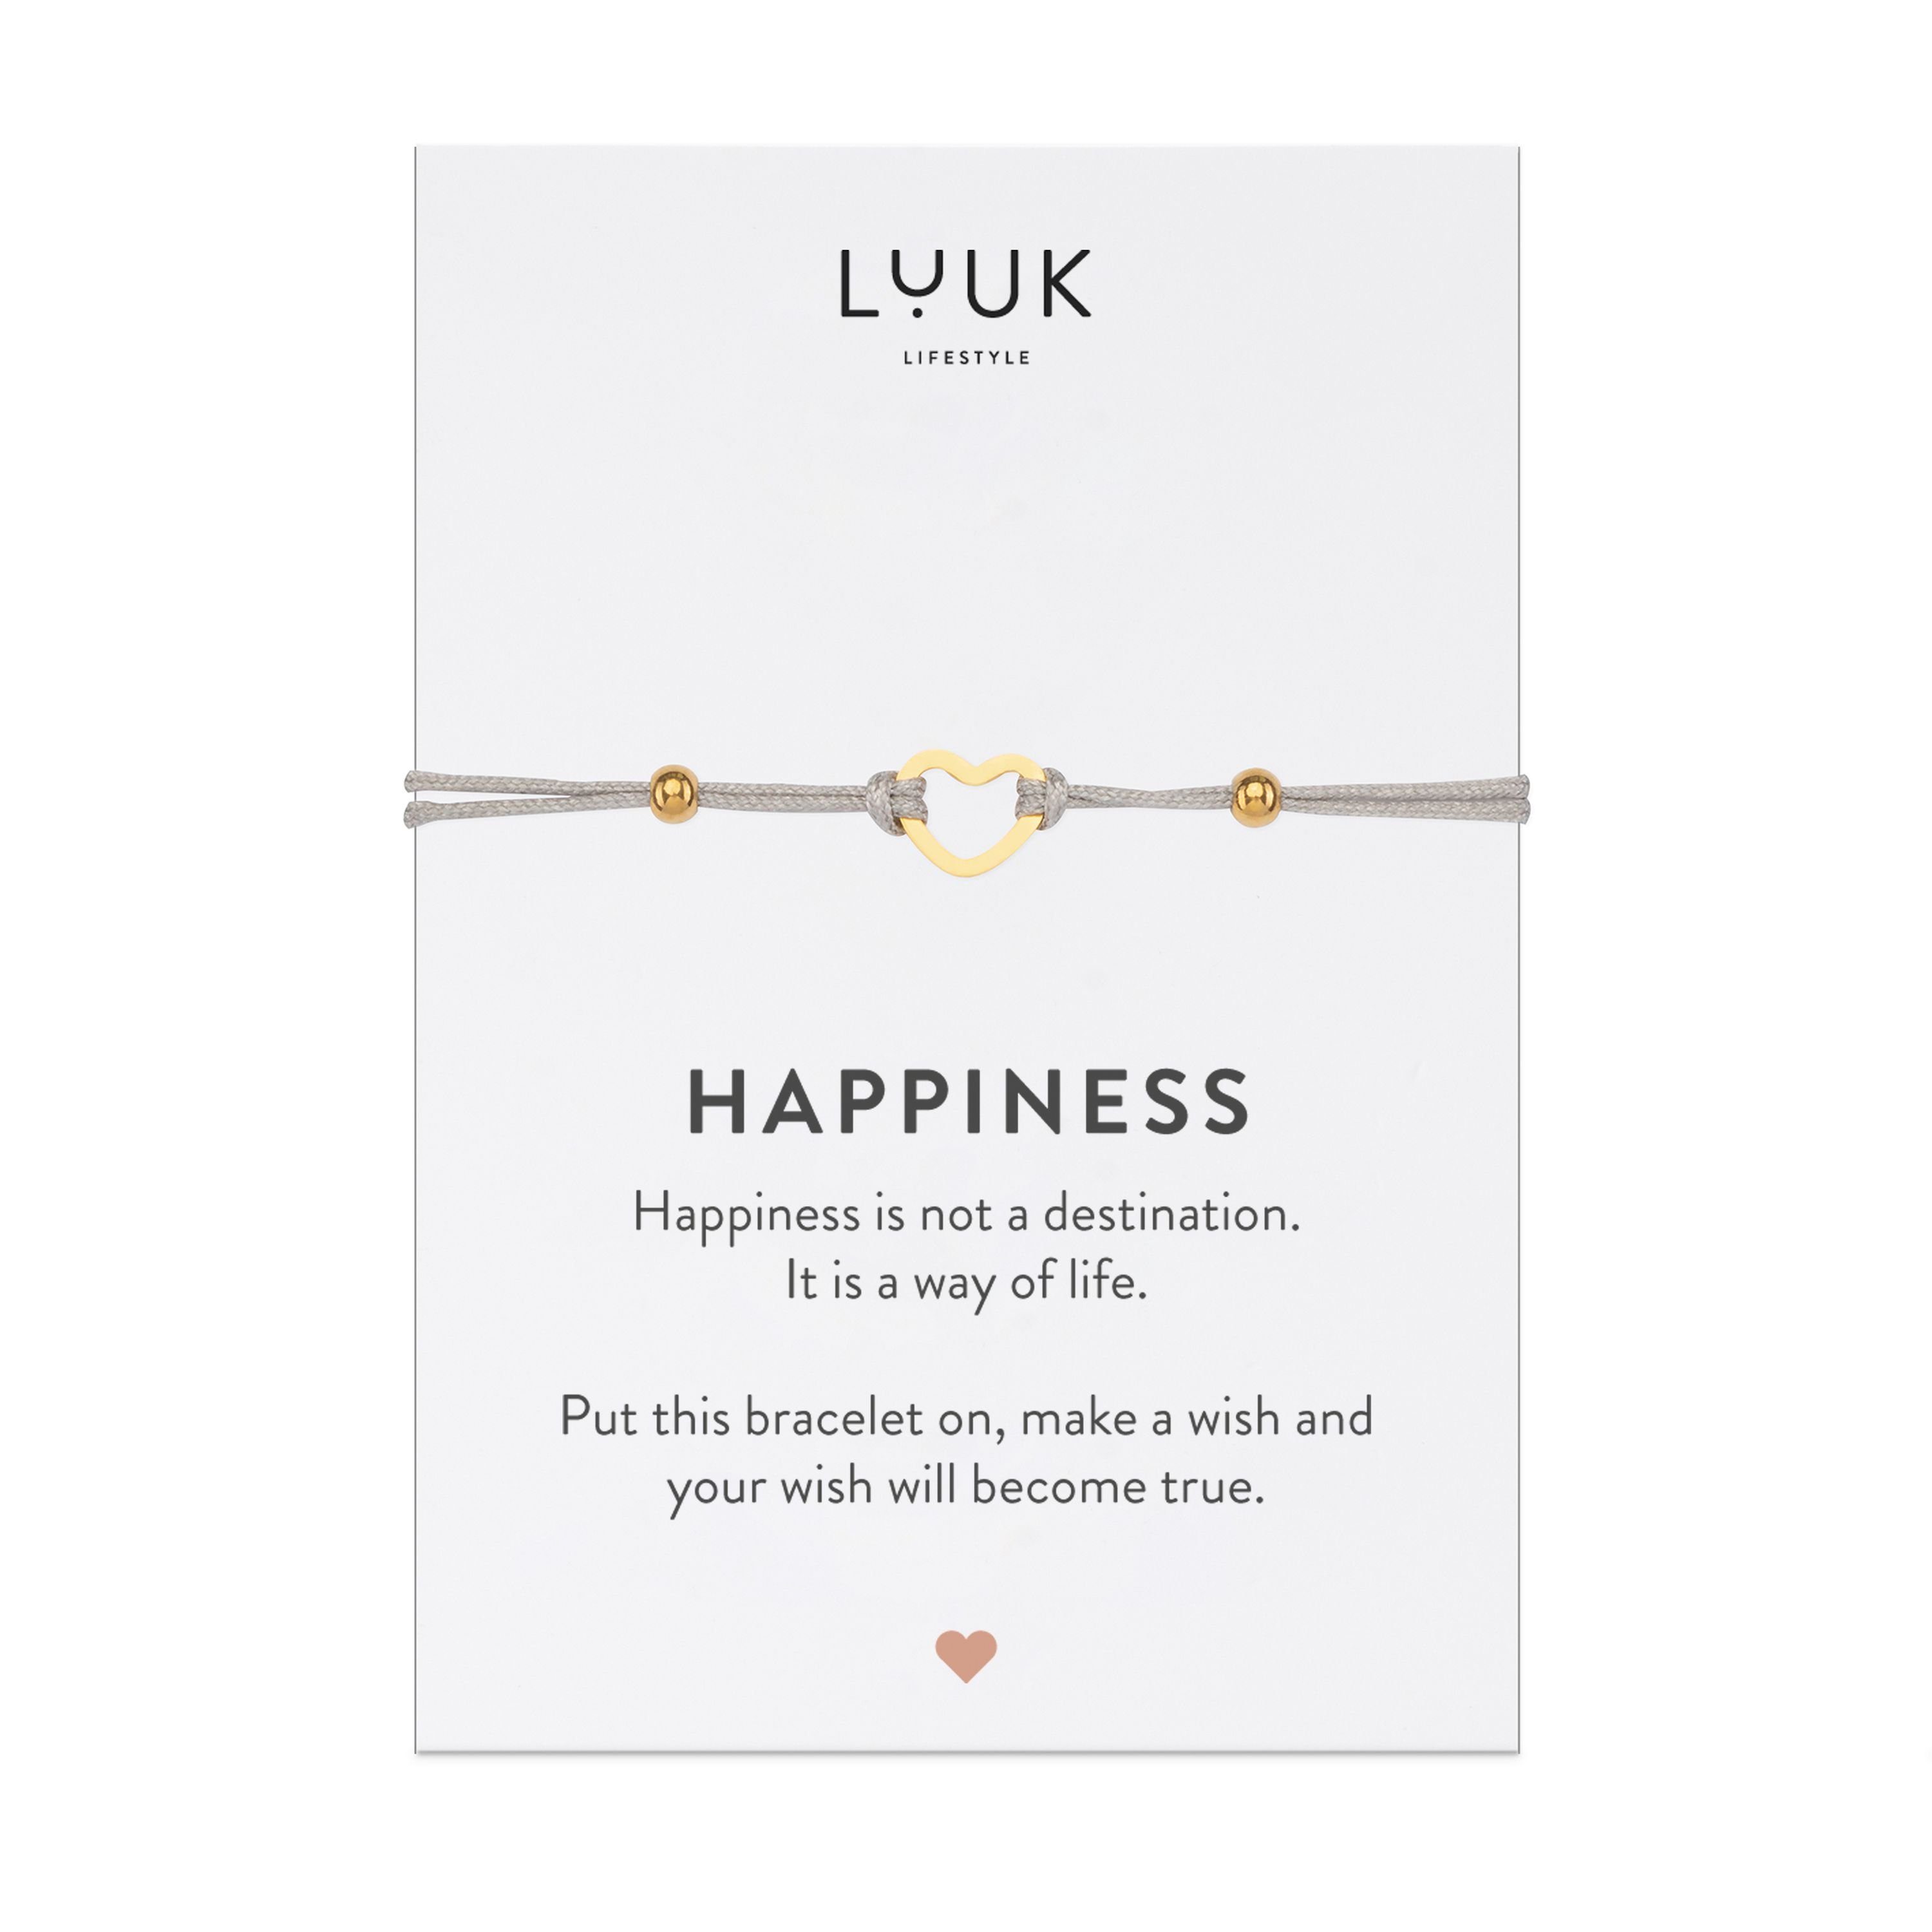 LUUK LIFESTYLE Freundschaftsarmband Herz, handmade, mit Happiness Spruchkarte Gold